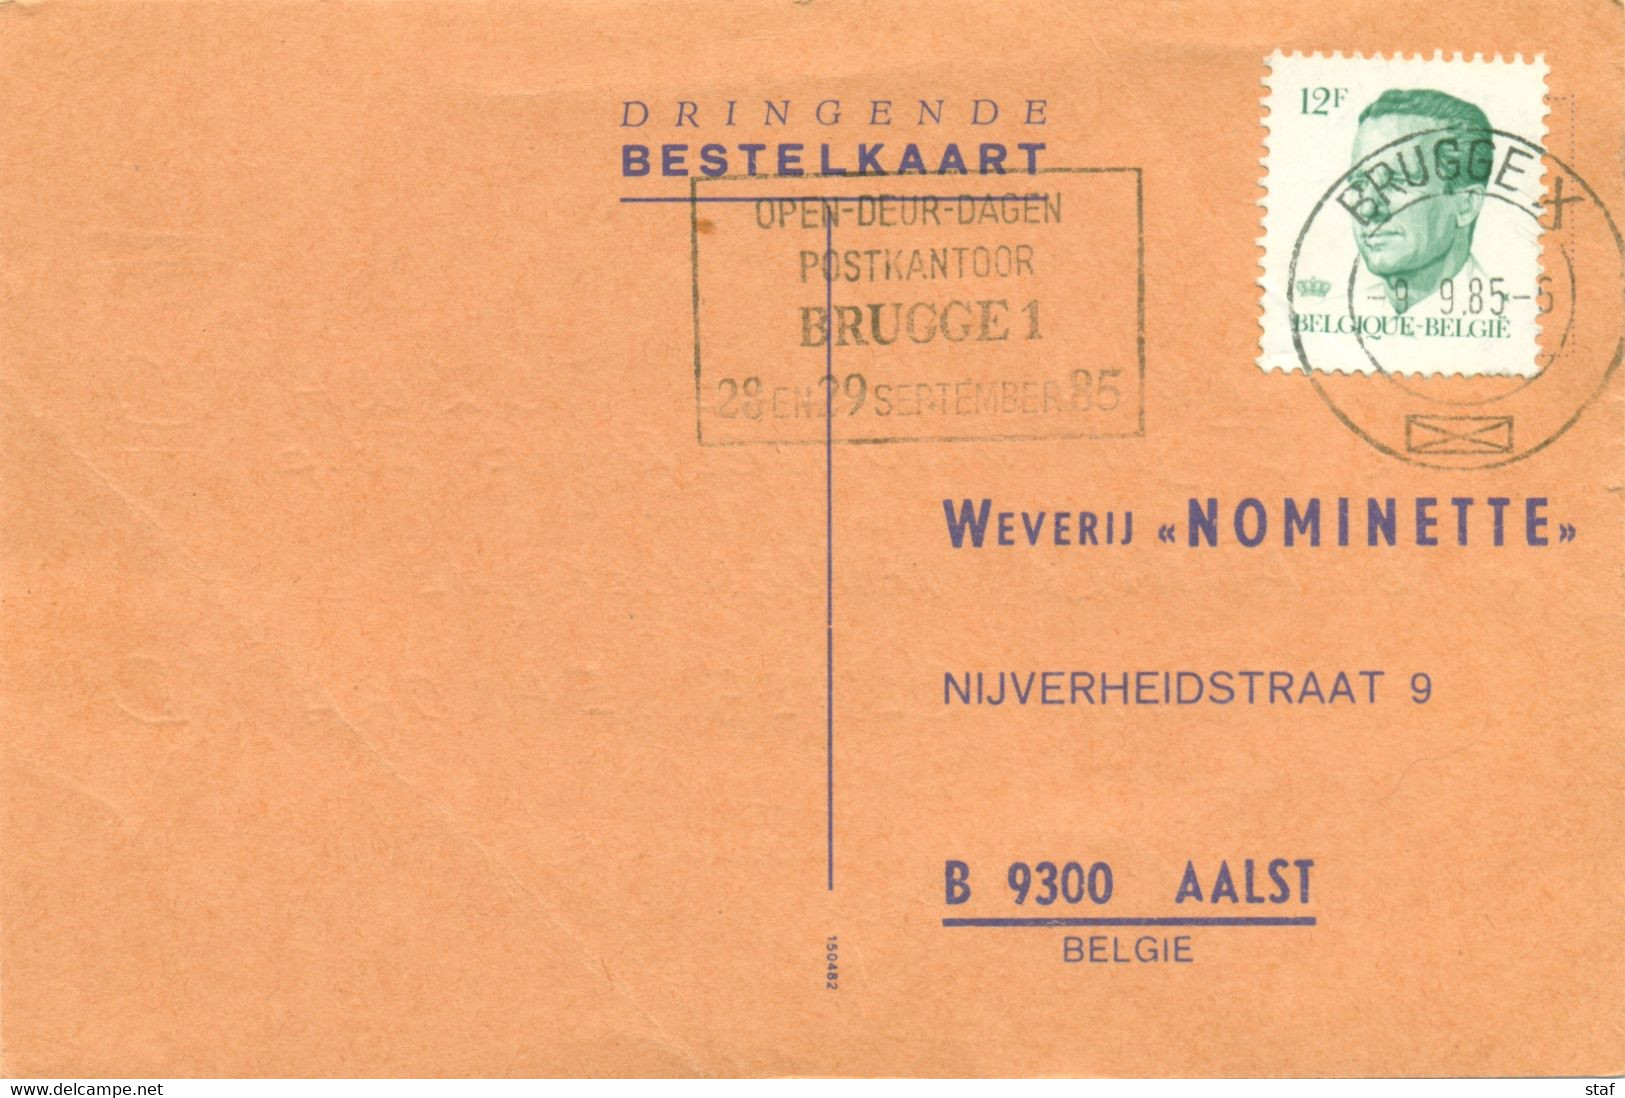 Opendeurdagen Postkantoor Brugge 1 28 En 29 September 85 - Targhette